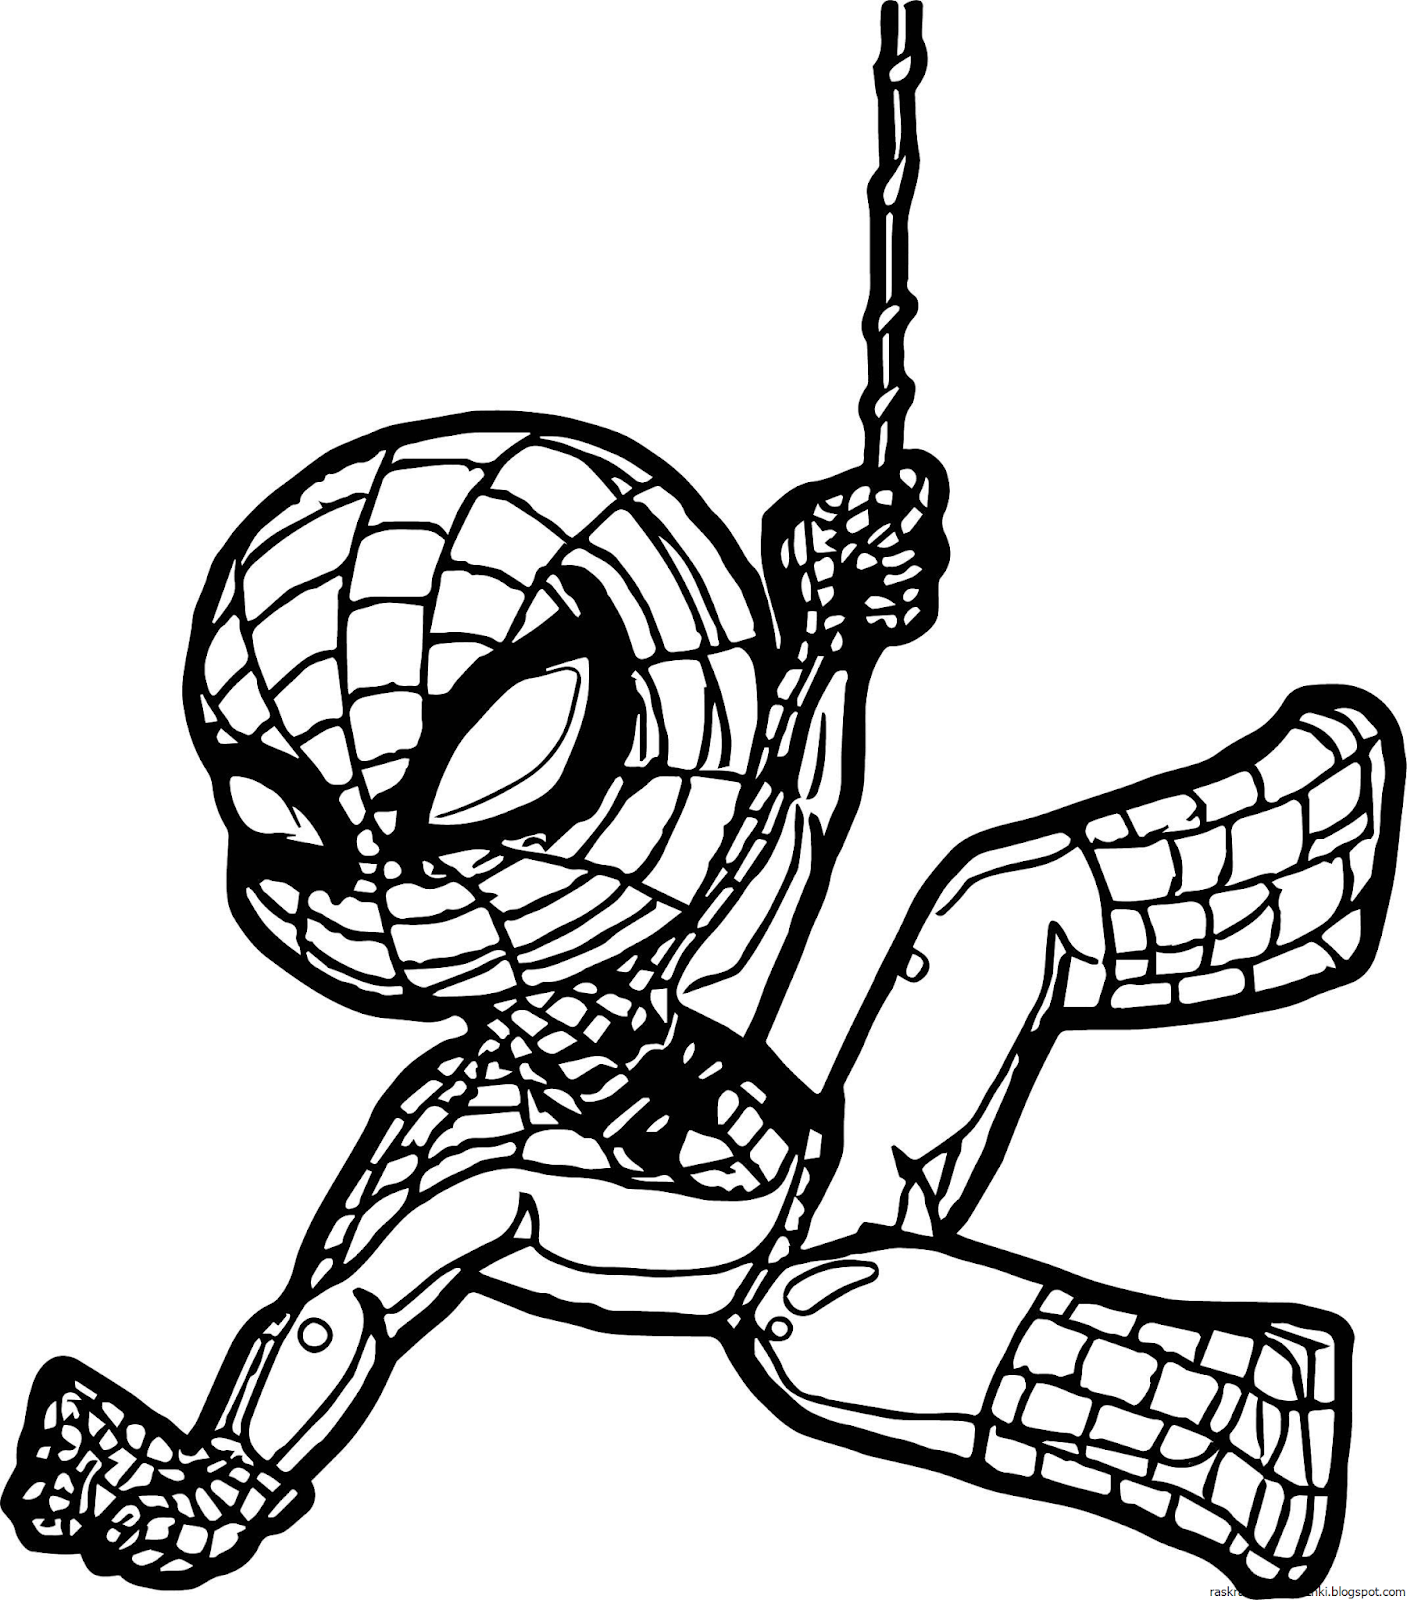 Раскраски spider man. Раскраска Супергерои Марвел человек паук. Спайдермен человек паук раскраска. Человек паук разрисовка. Человек паук разукрашка для детей.